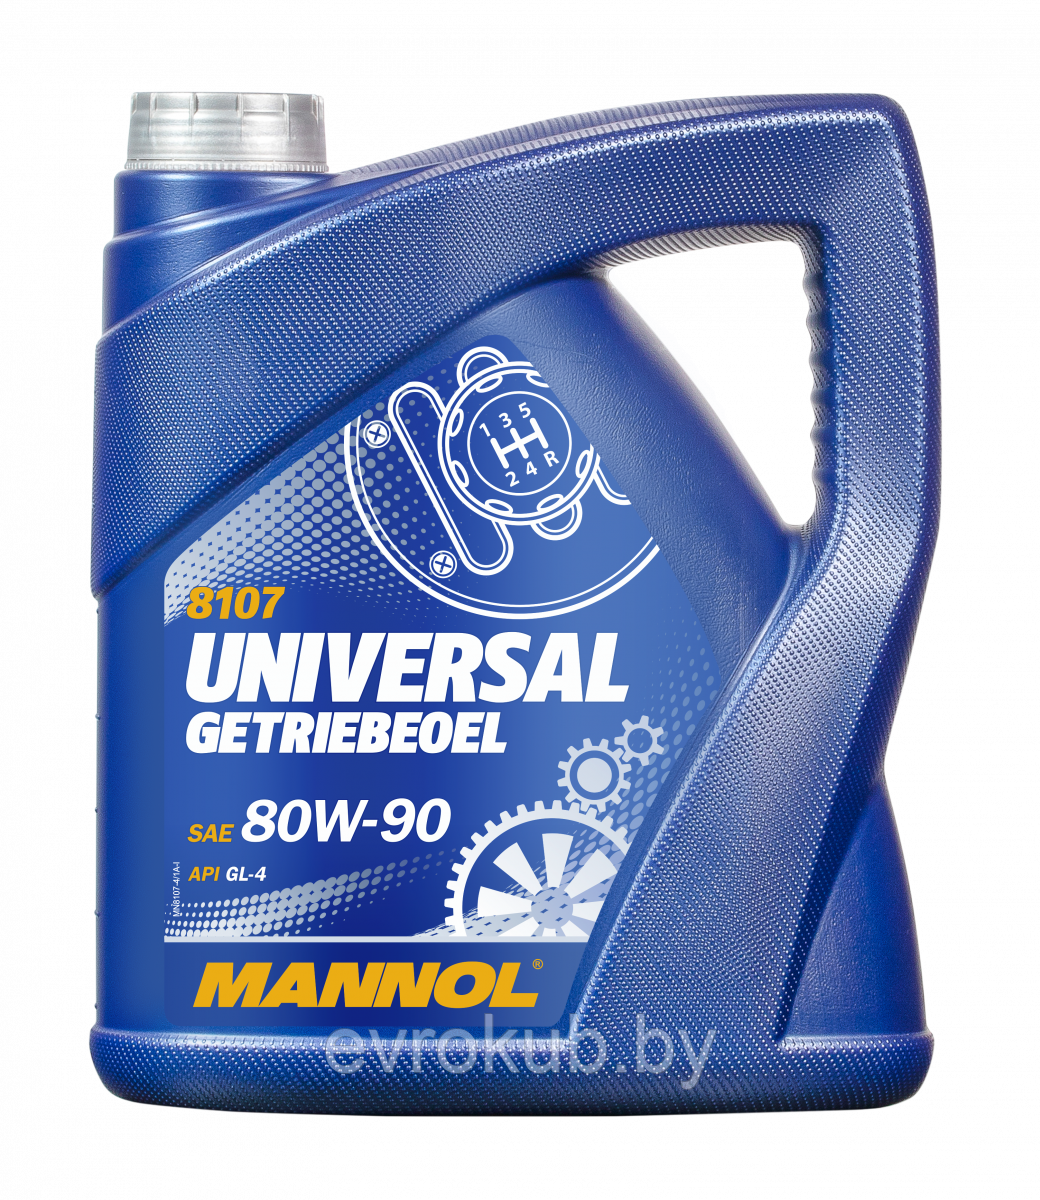 Масло трансмиссионное Mannol Universal 80W-90 GL-4 8107 (5 литров)